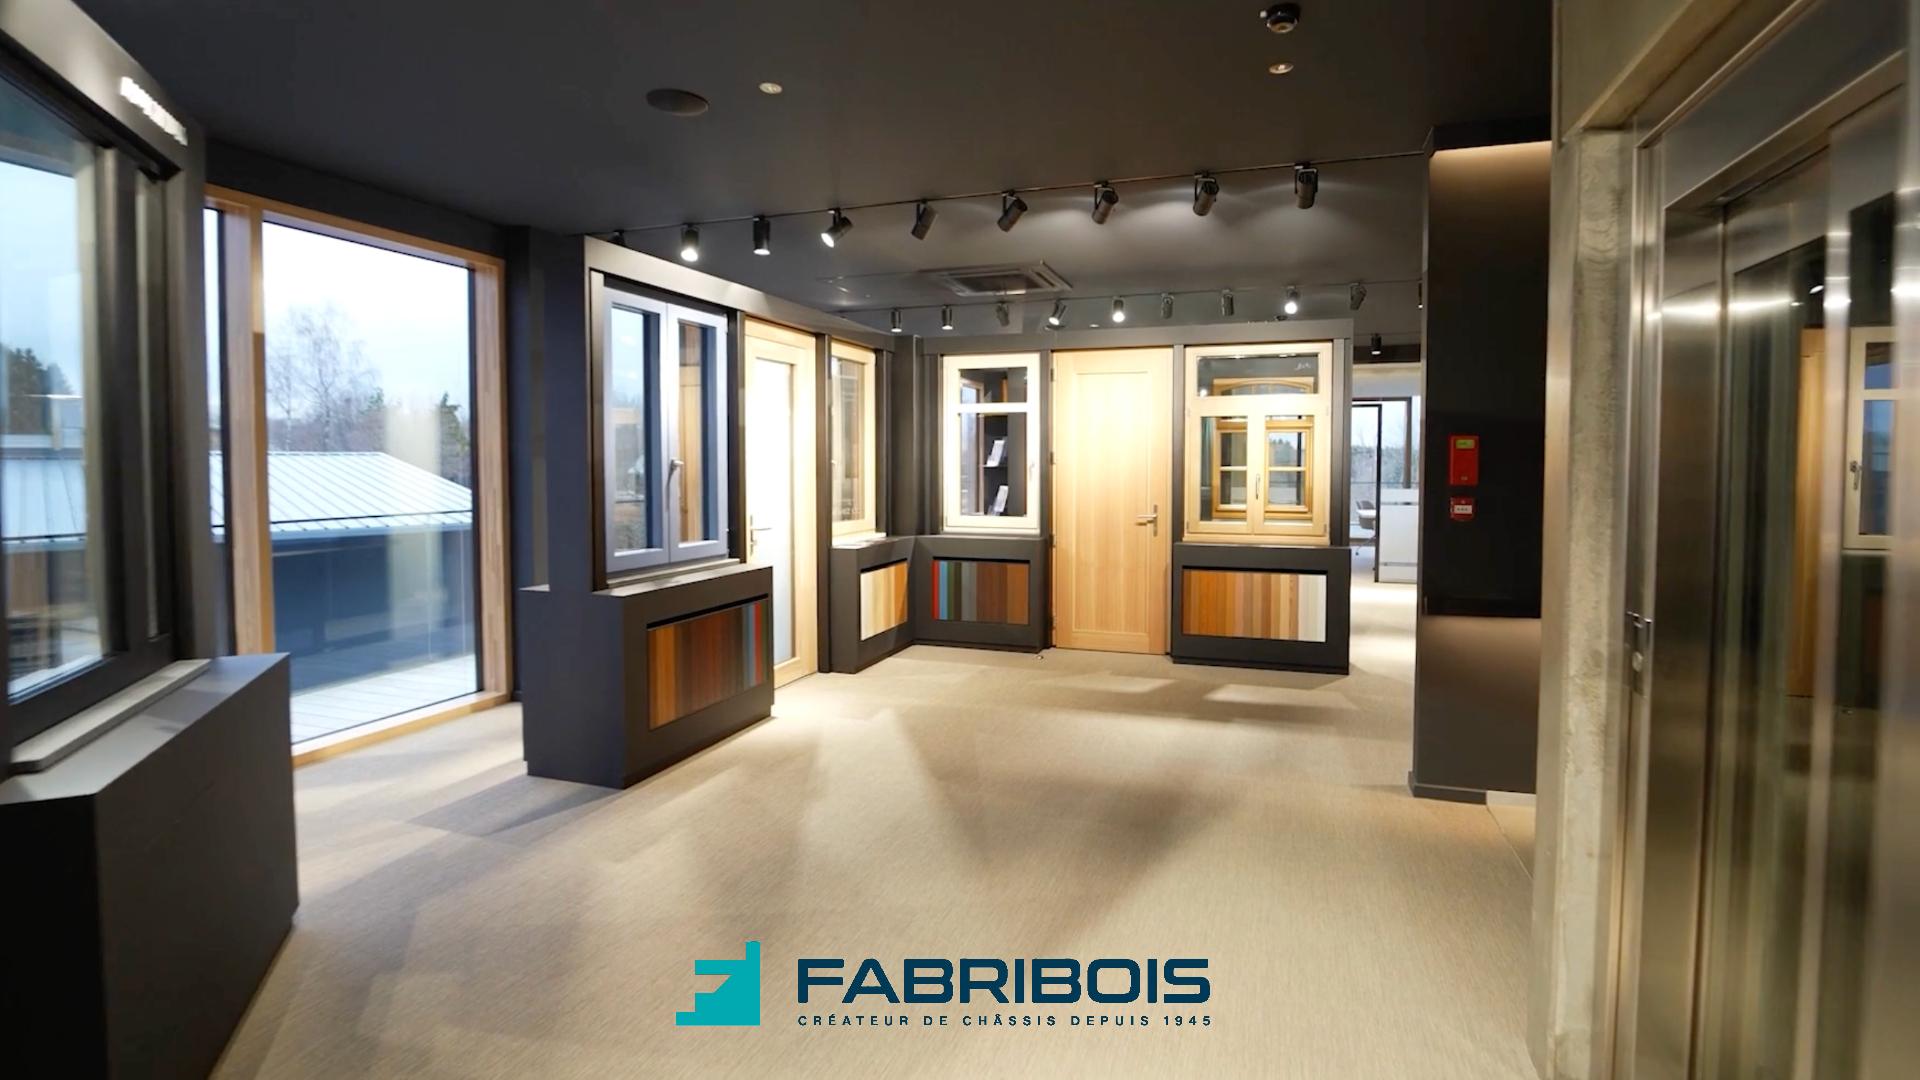 Présentation du showroom Fabribois